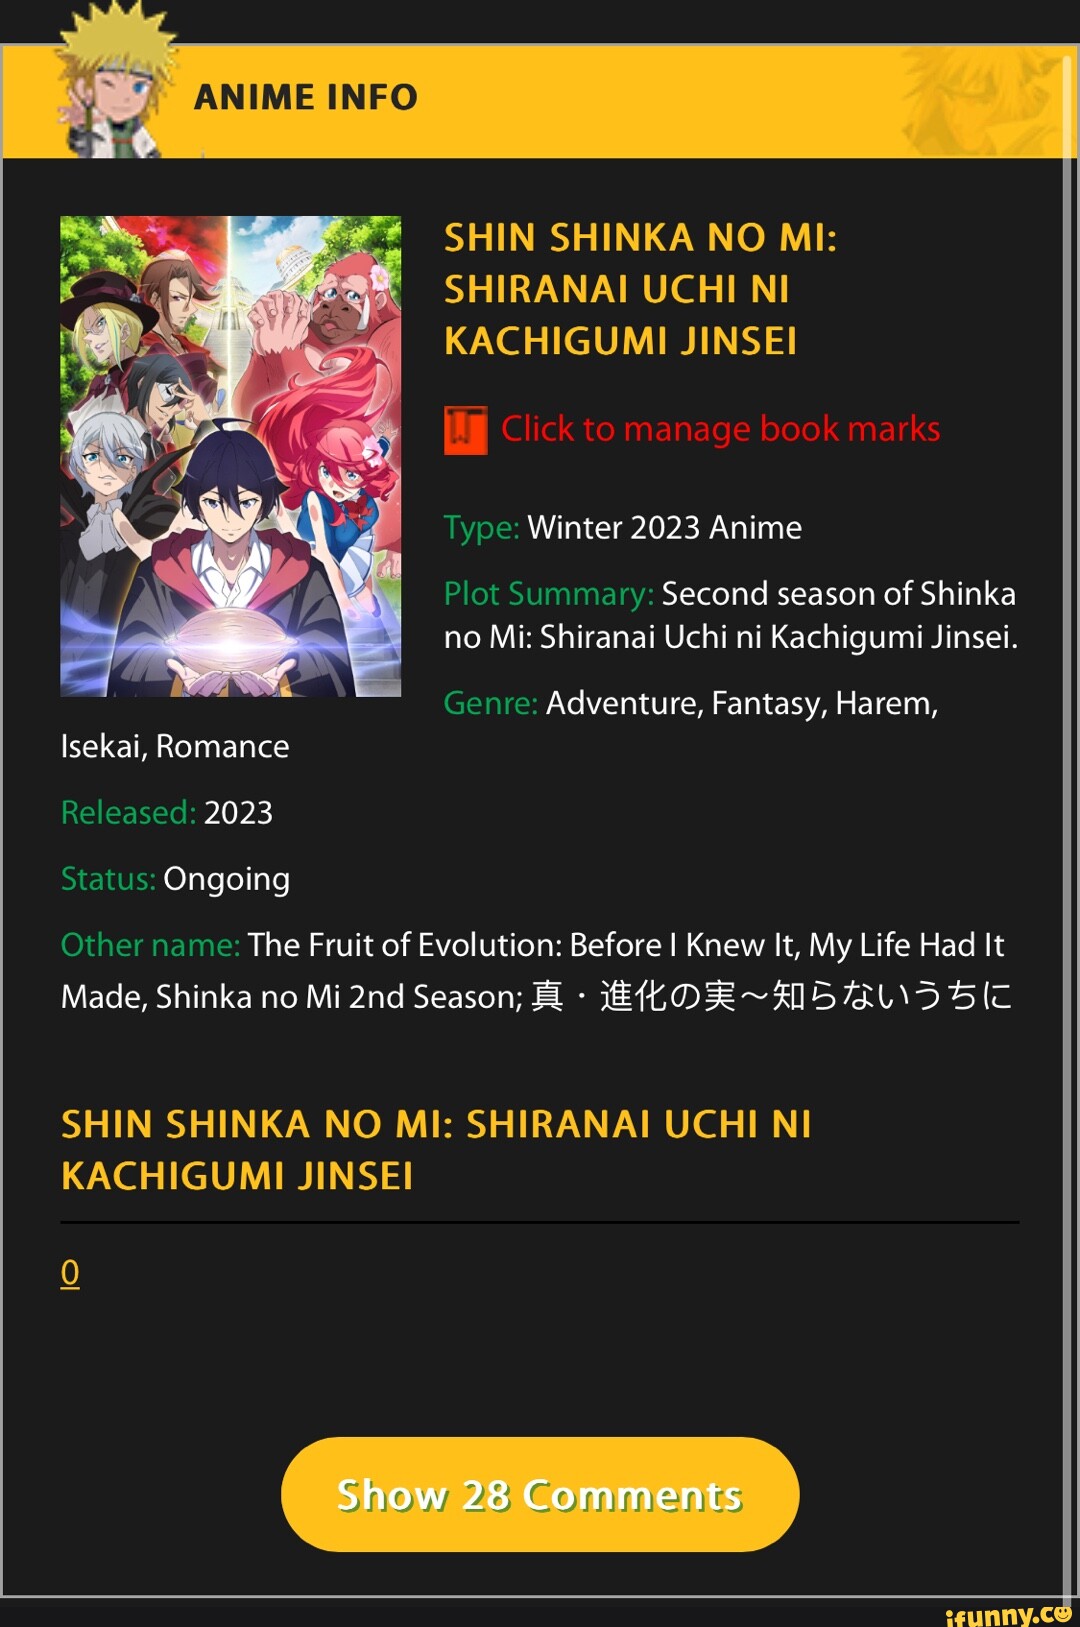 Shin Shinka no Mi: Shiranai Uchi ni Kachigumi Jinsei 